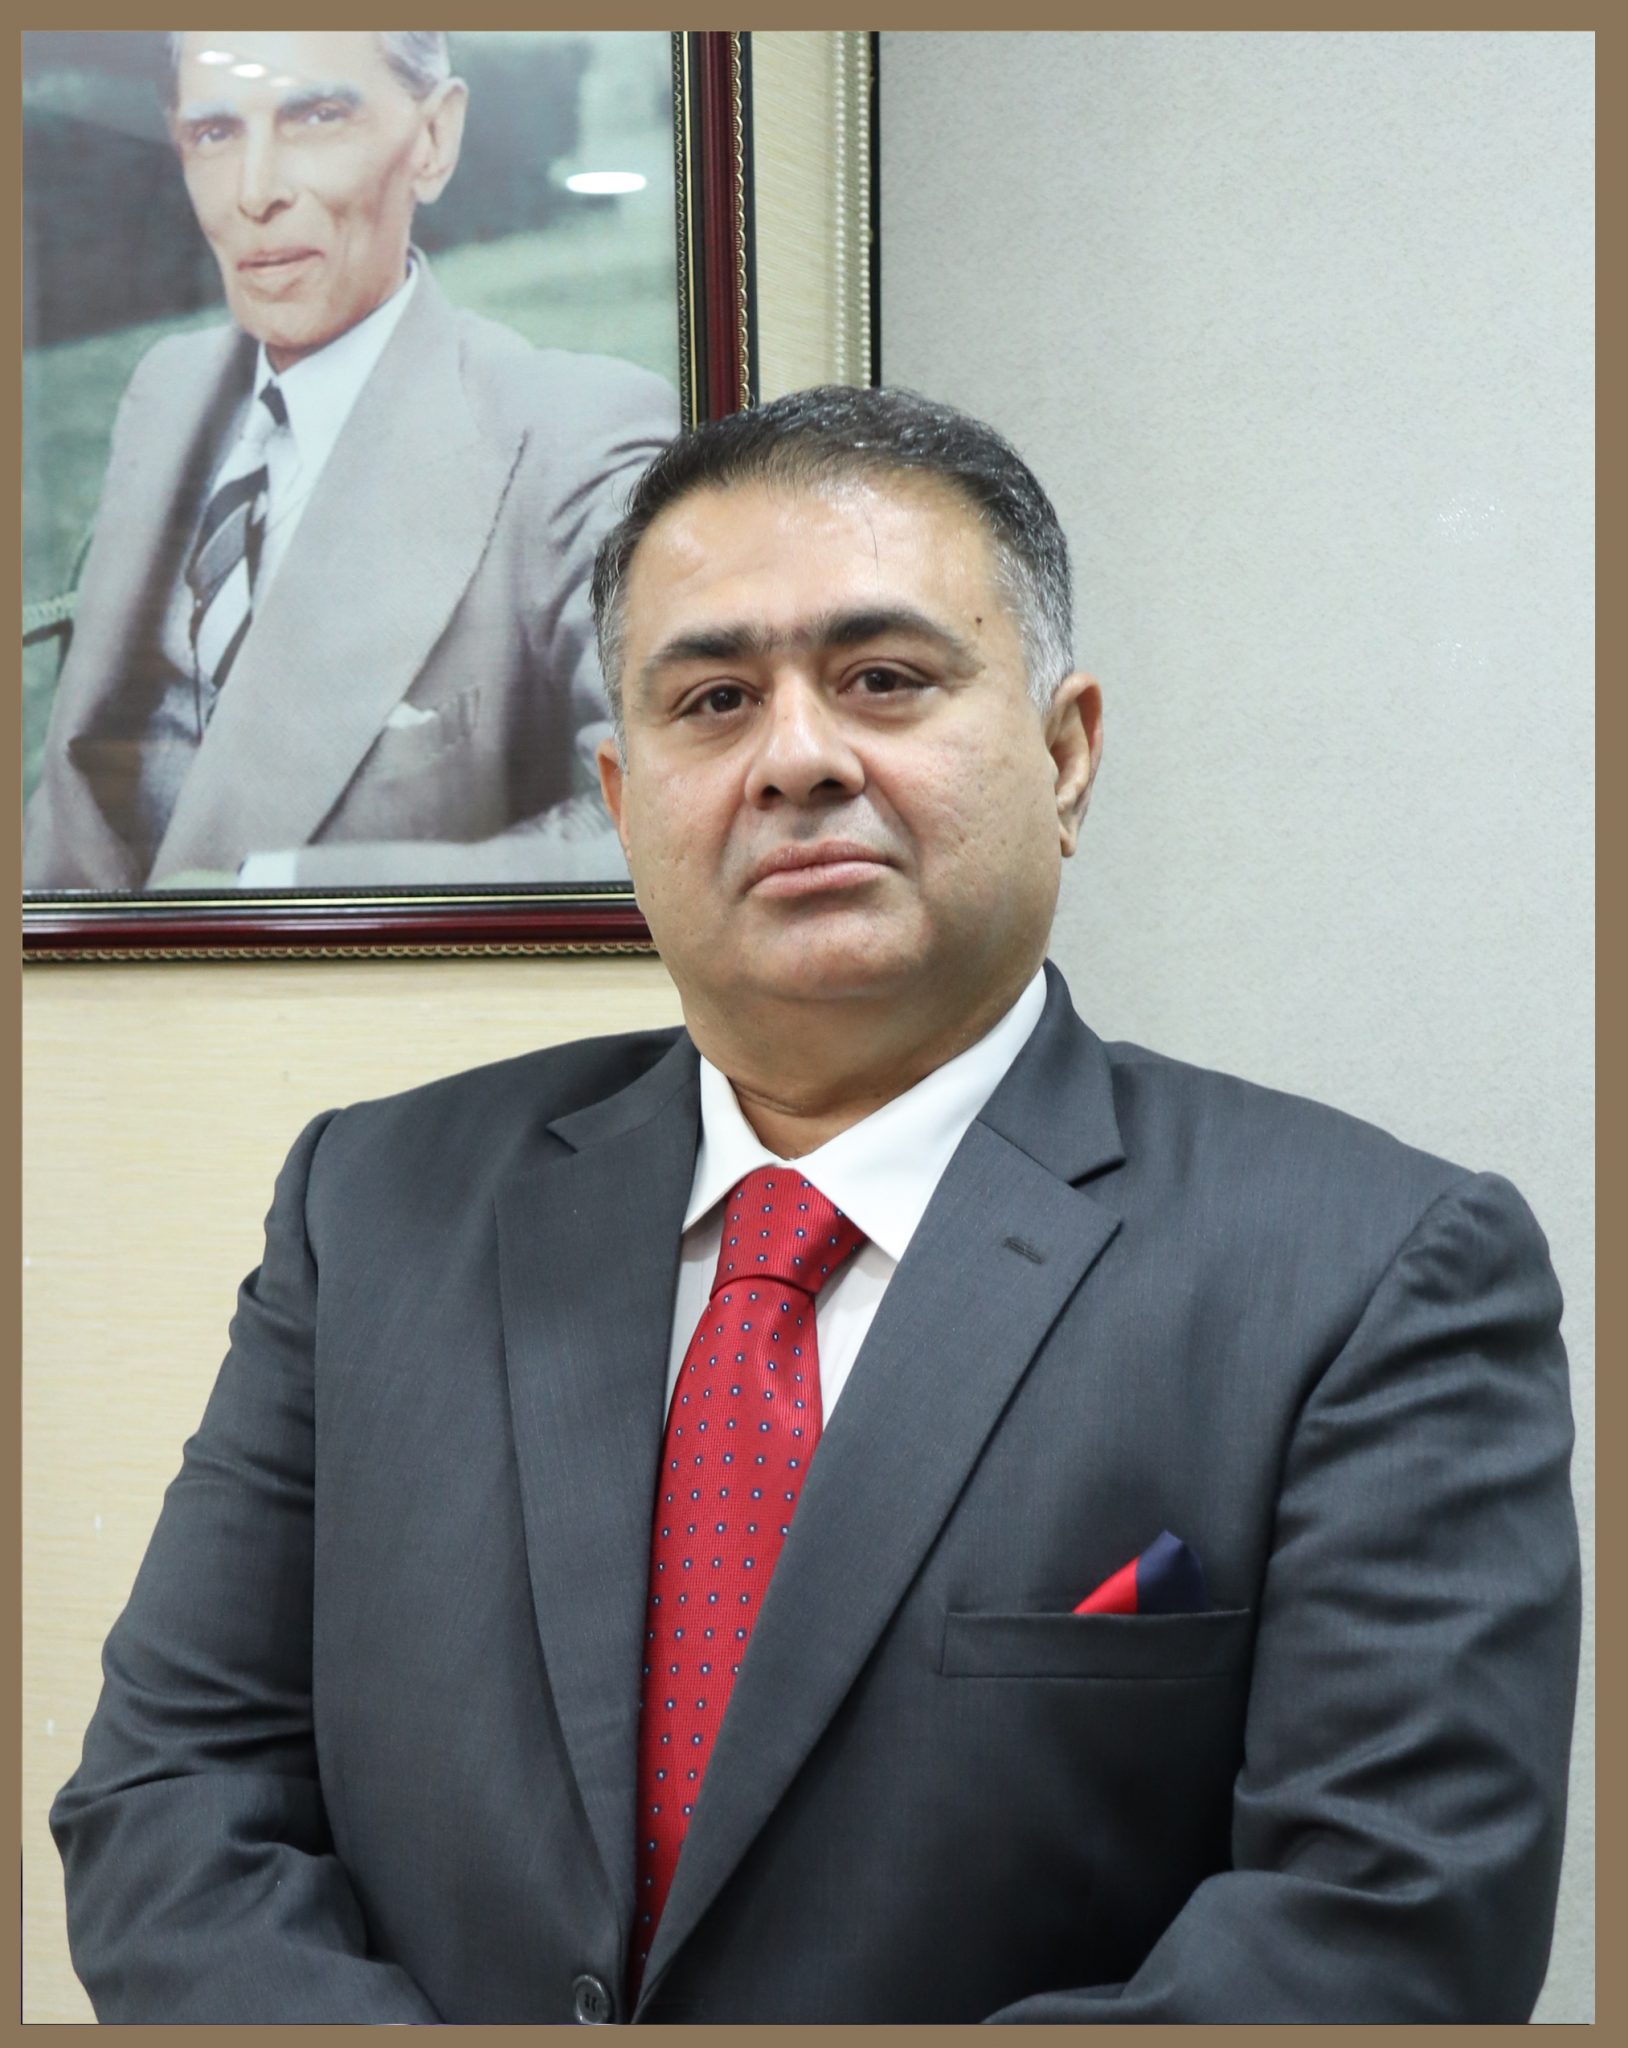 Mr Adnan Khalid Butt